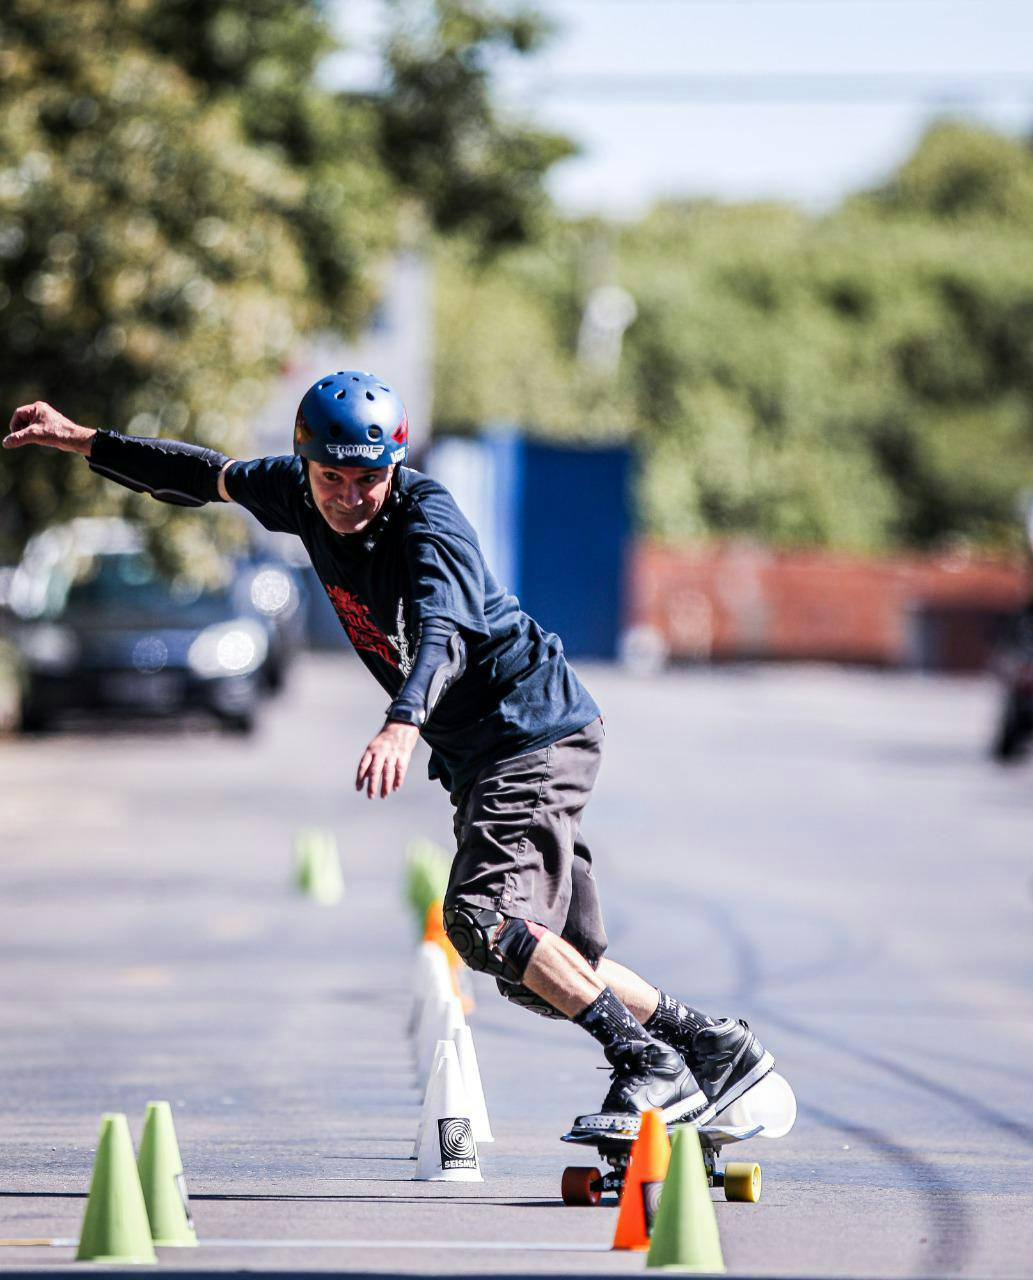 Diadema encerra Jogos da Primavera com competições de Skate - ABC